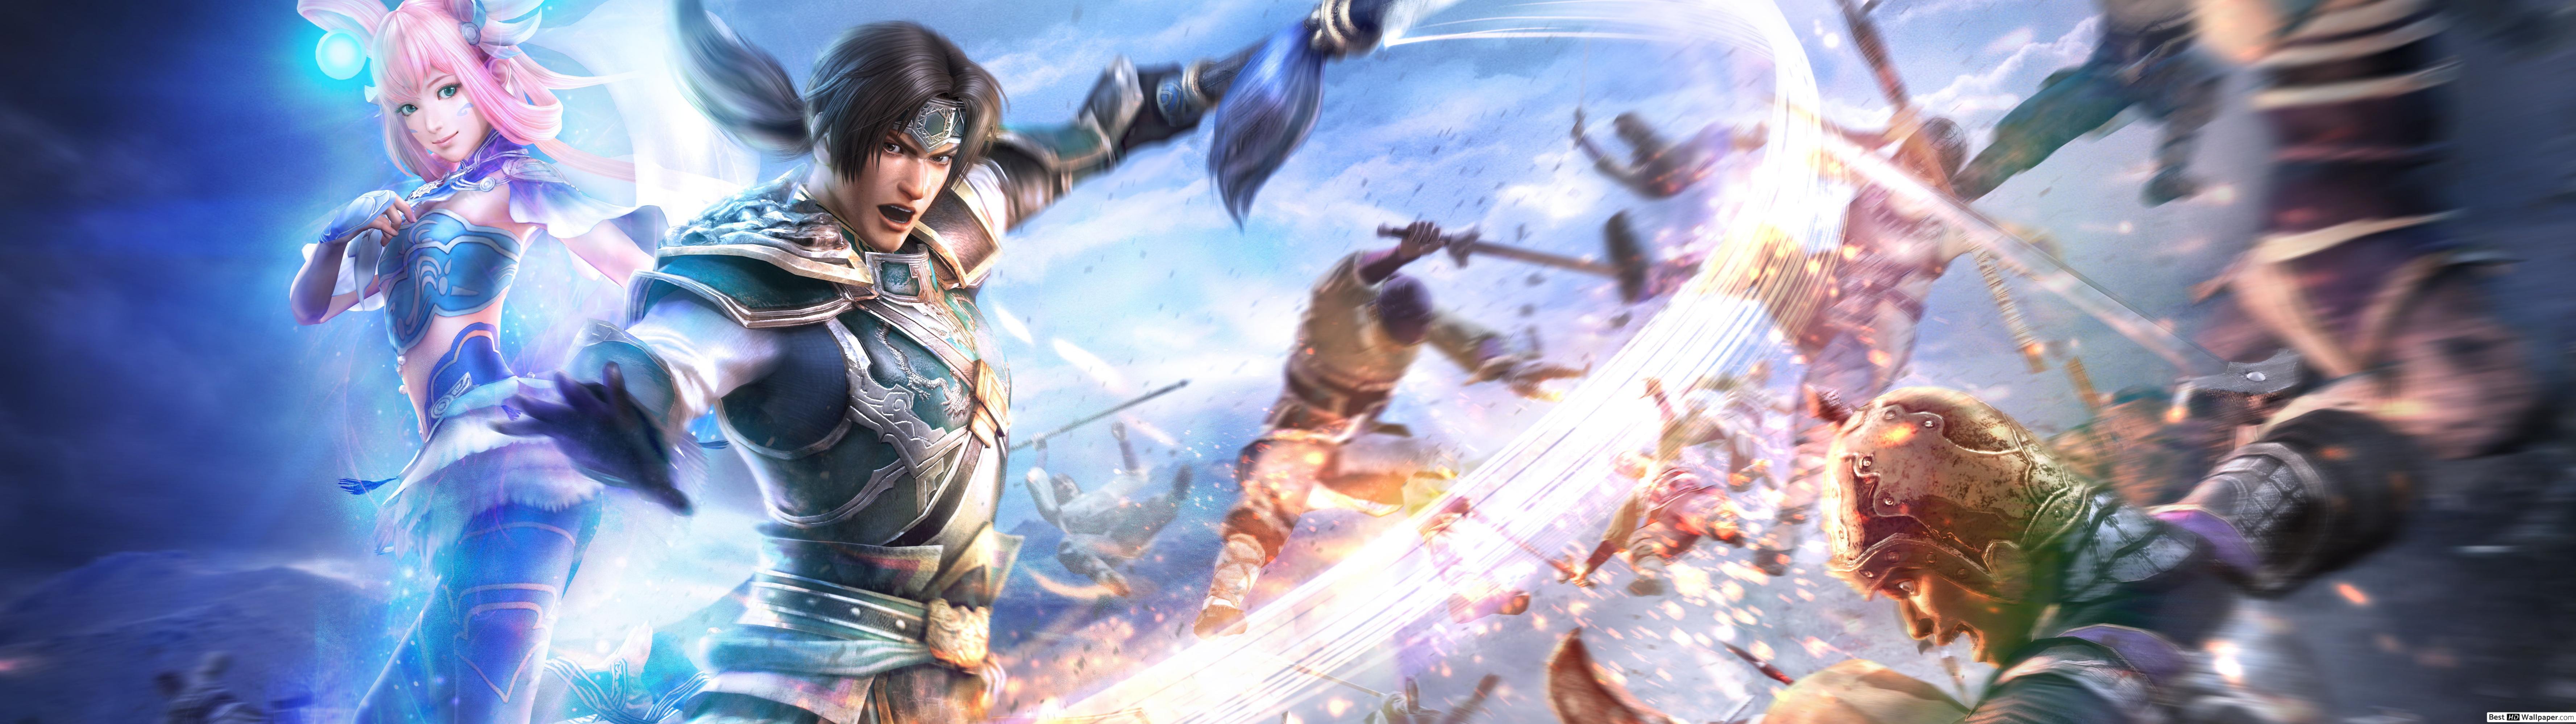 Dynasty Warrior Zhao Yun Vs Lu Bu - HD Wallpaper 